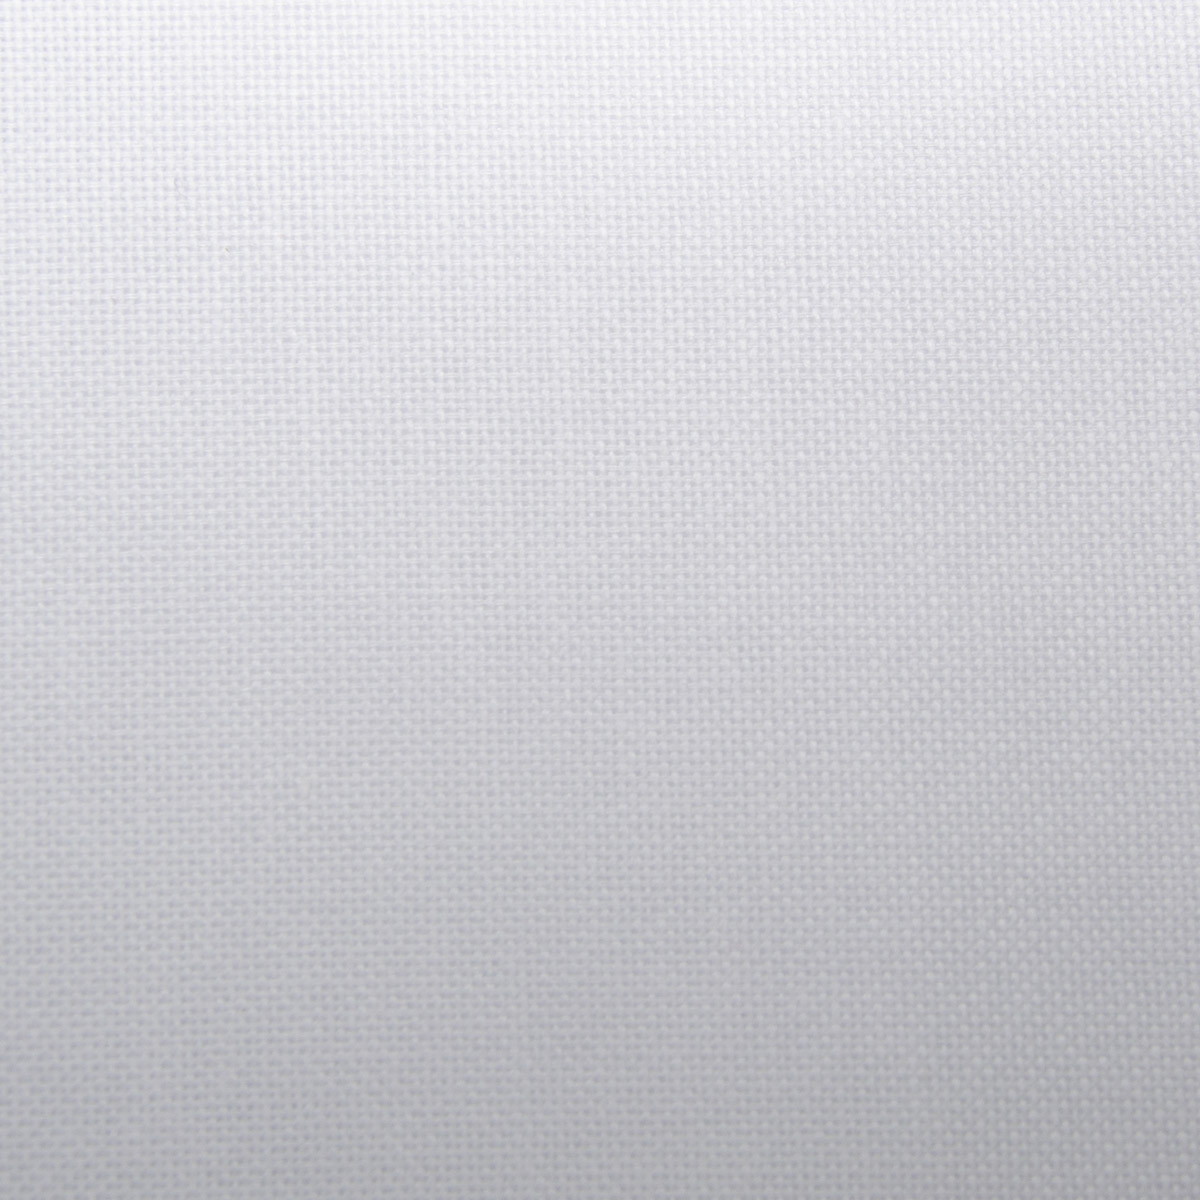 784 (802) Ткань для вышивания равномерка белая, 500х147см 100% хлопок 30ct